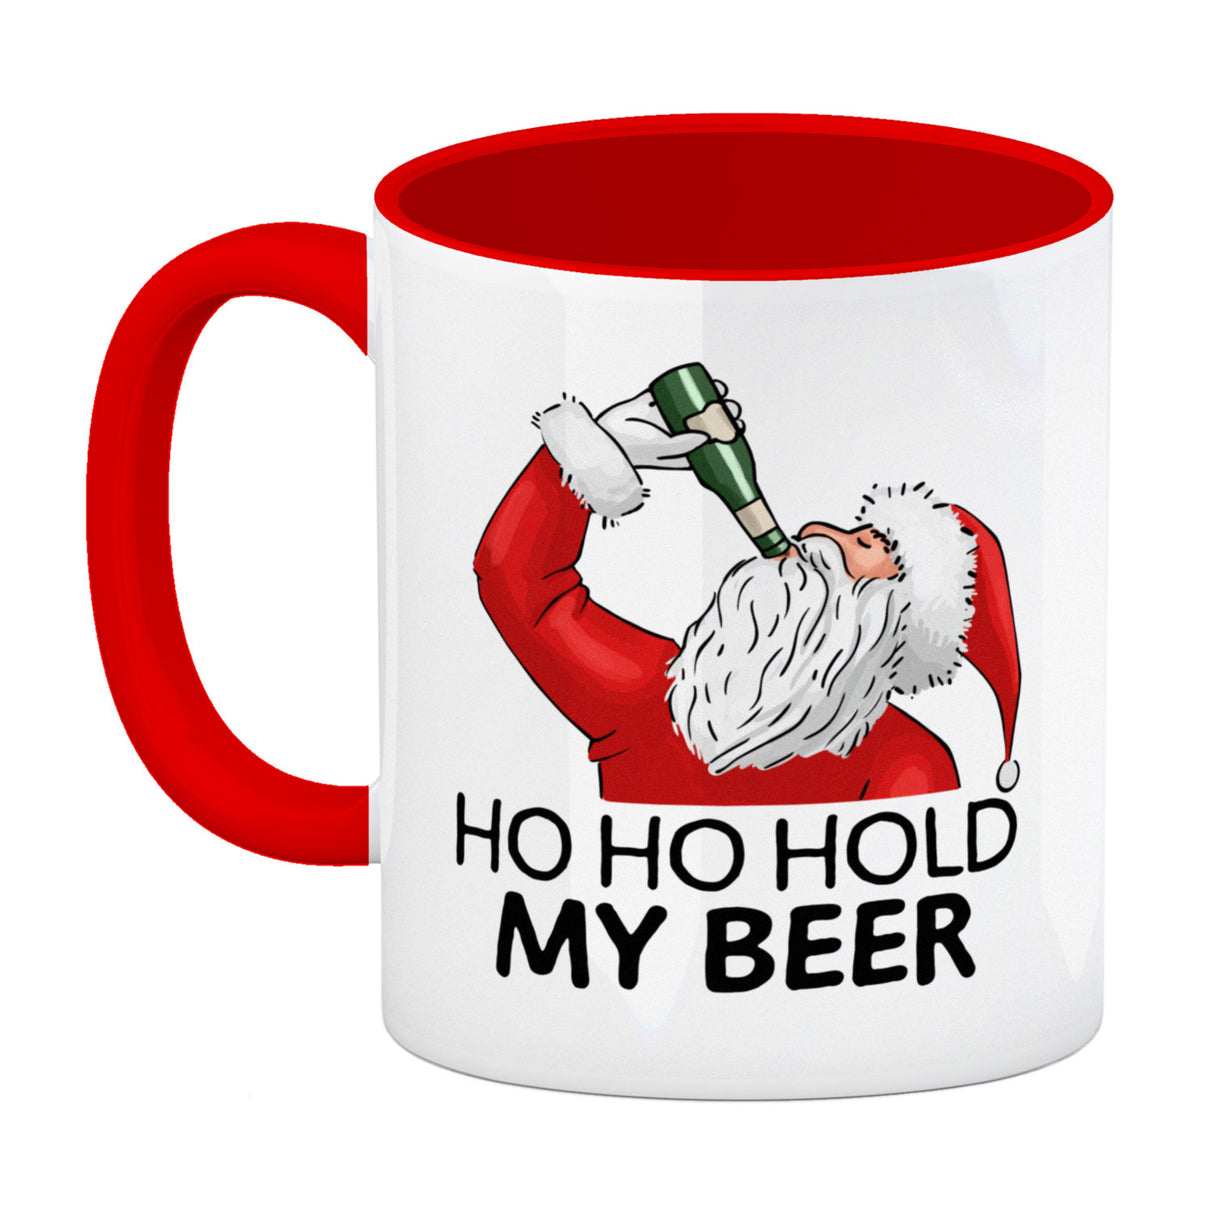 Ho Ho hold my beer Kaffeebecher mit Weihnachtsmann Motiv